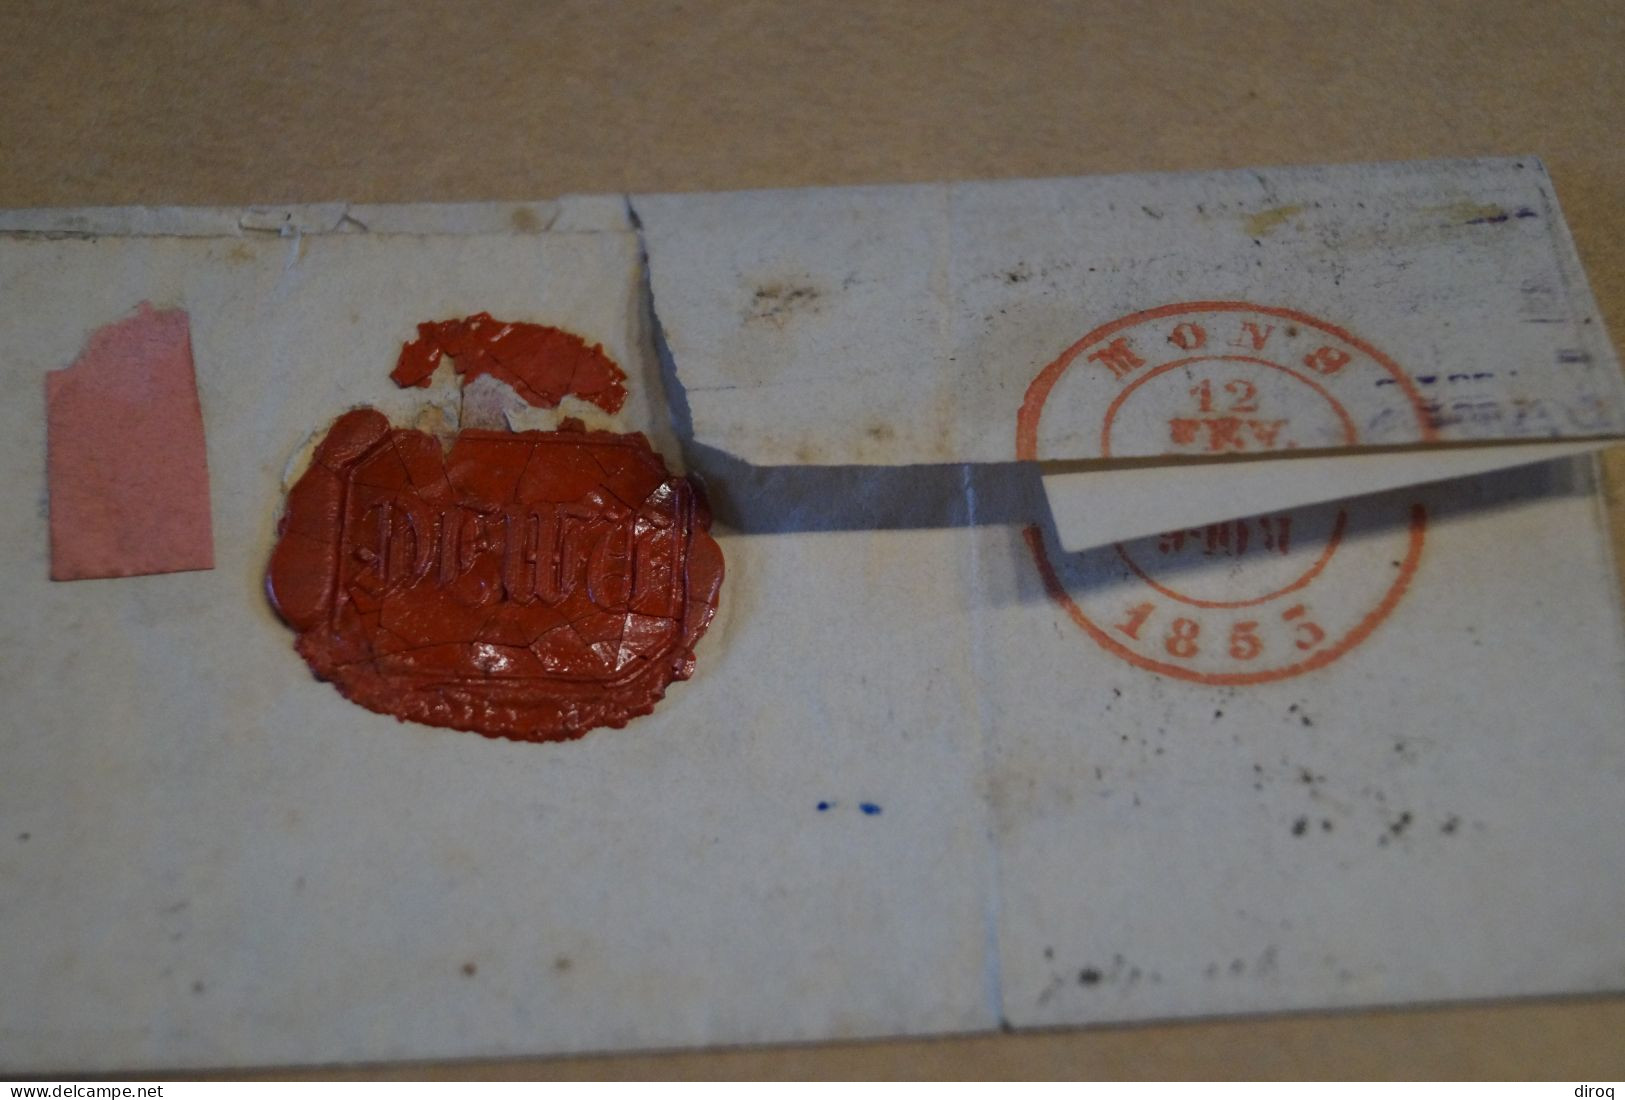 bel envoi,très belle oblitération ,2 timbres + cachet de cire, Gand et Mons 1853